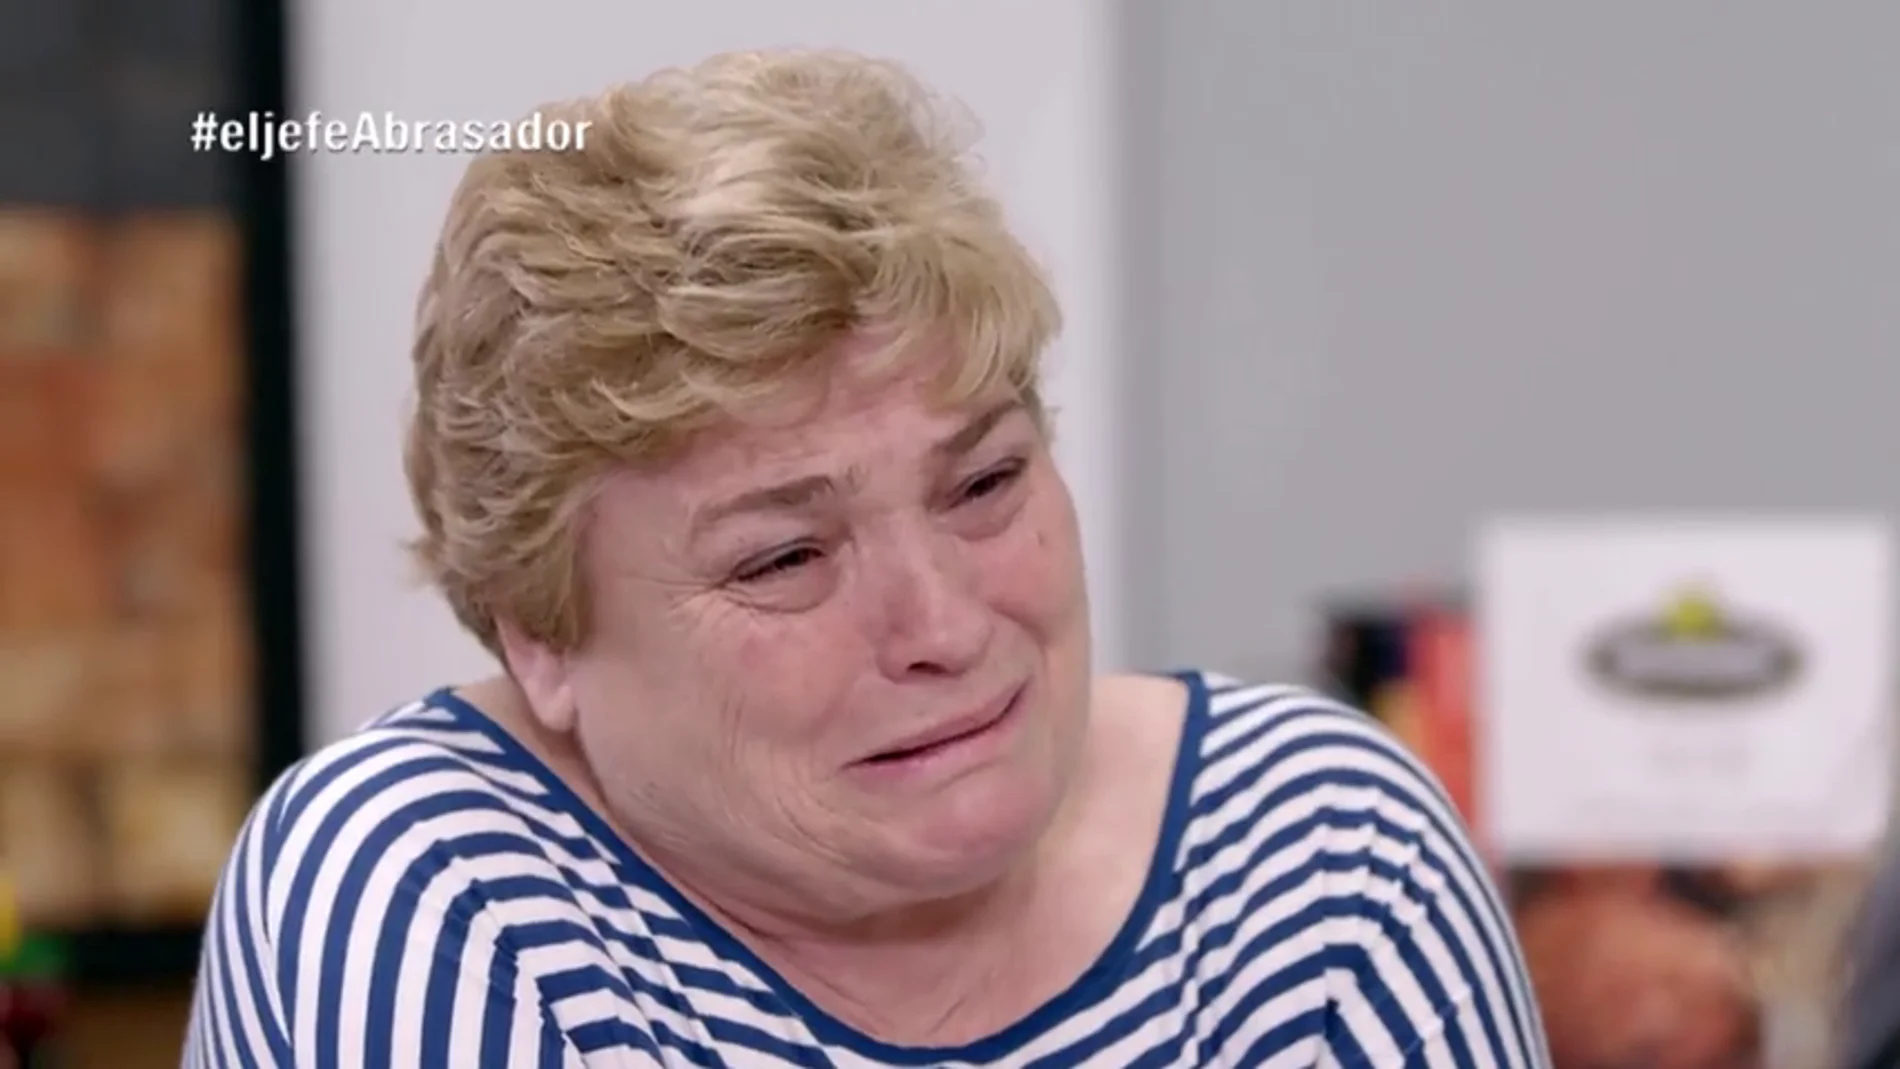 Lourdes se planta llorando ante las críticas de 'La Jefa infiltrada' de Abrasador: "Con 61 años no me llevo estos disgustos más"